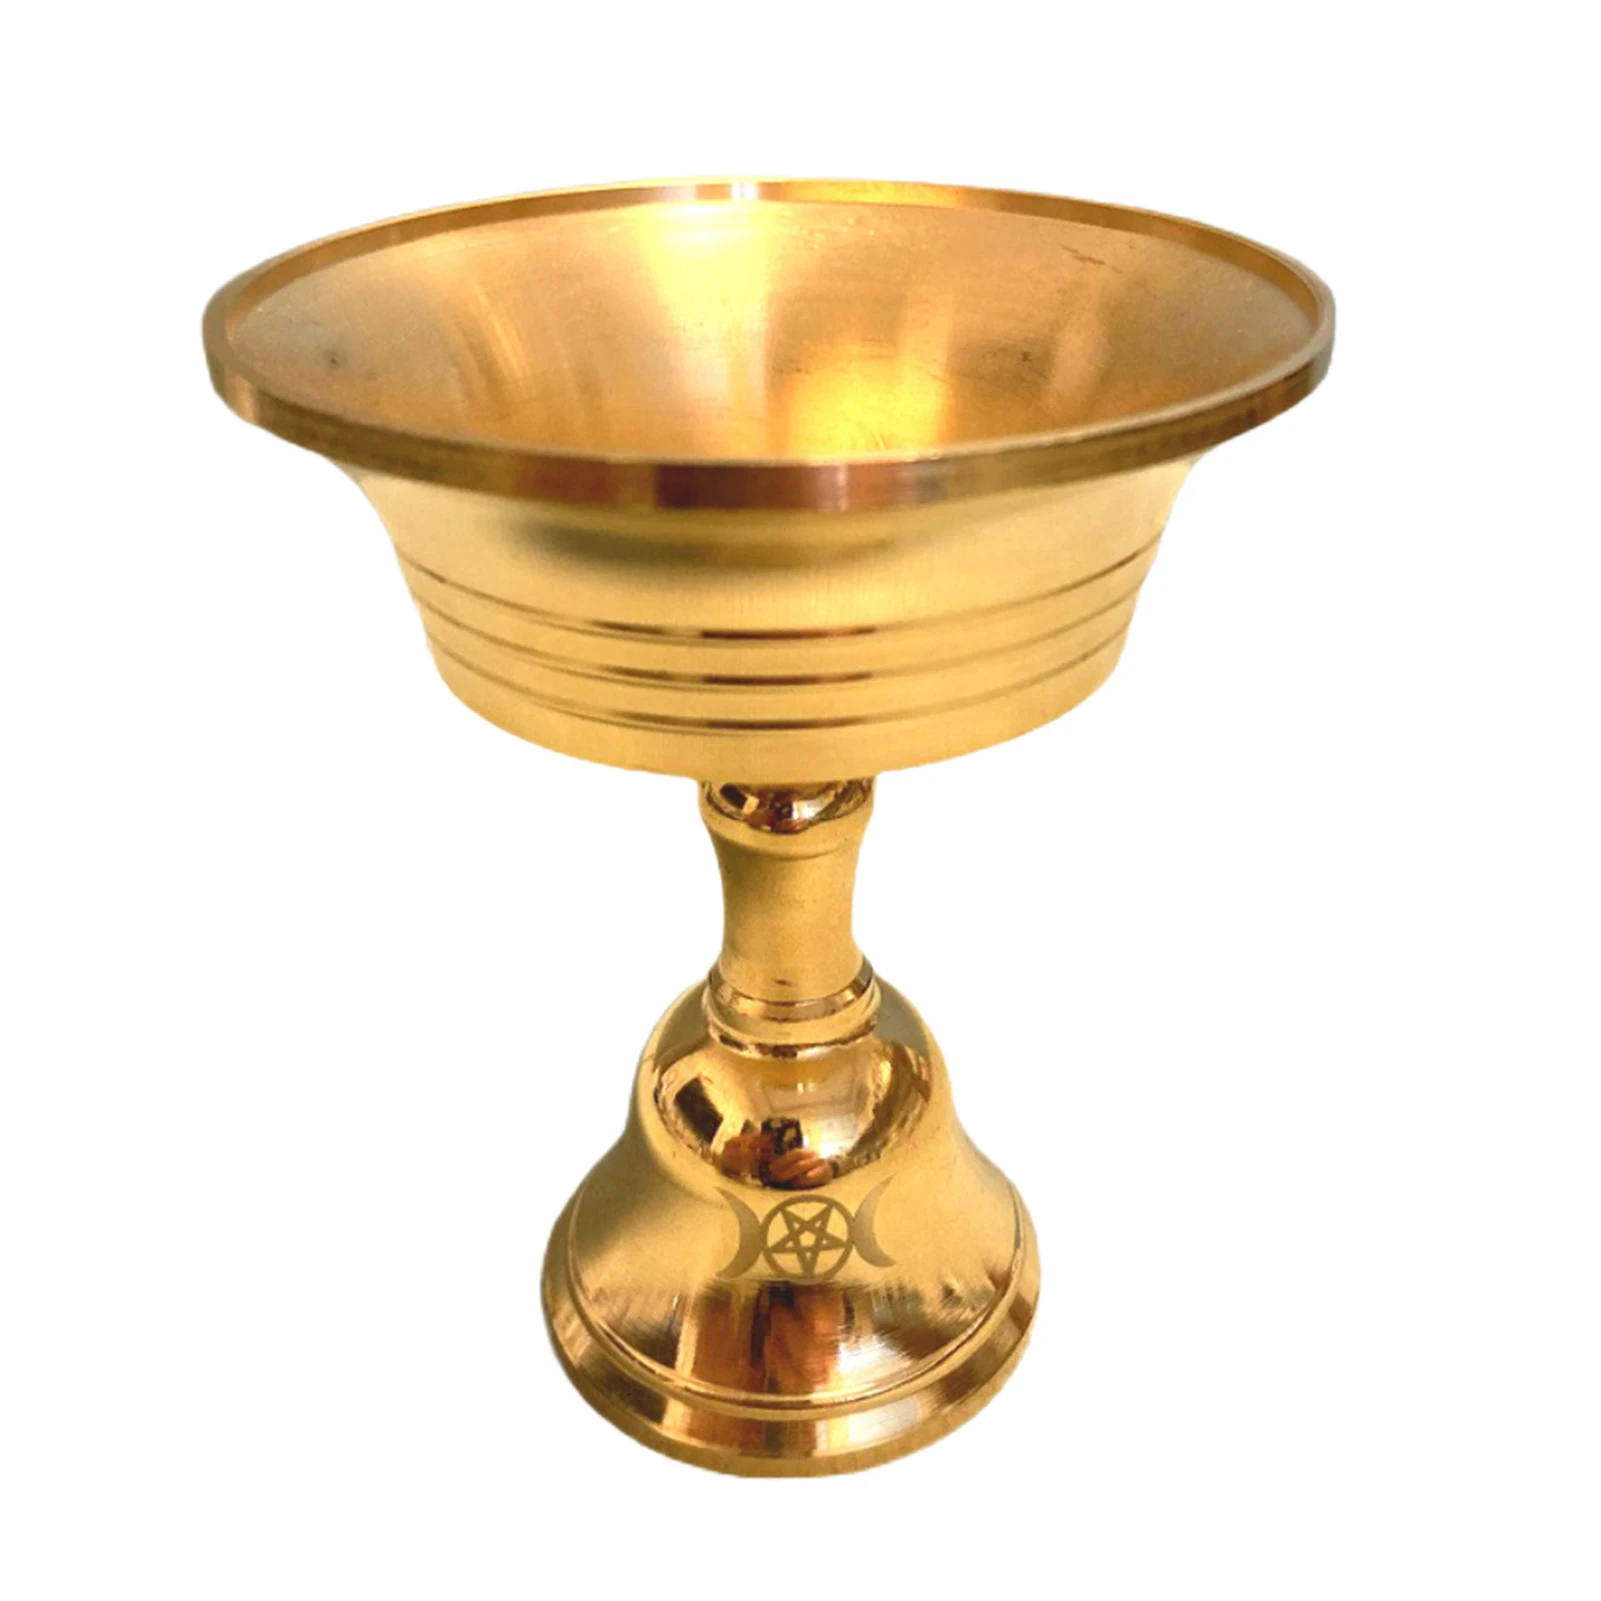 

Brass Oil Lamp Holder Ghee Lamp Butter Lamp Holder Golden Cup Candle Candlesticks Tibetan Buddhist Altar Supplies Candle Holder